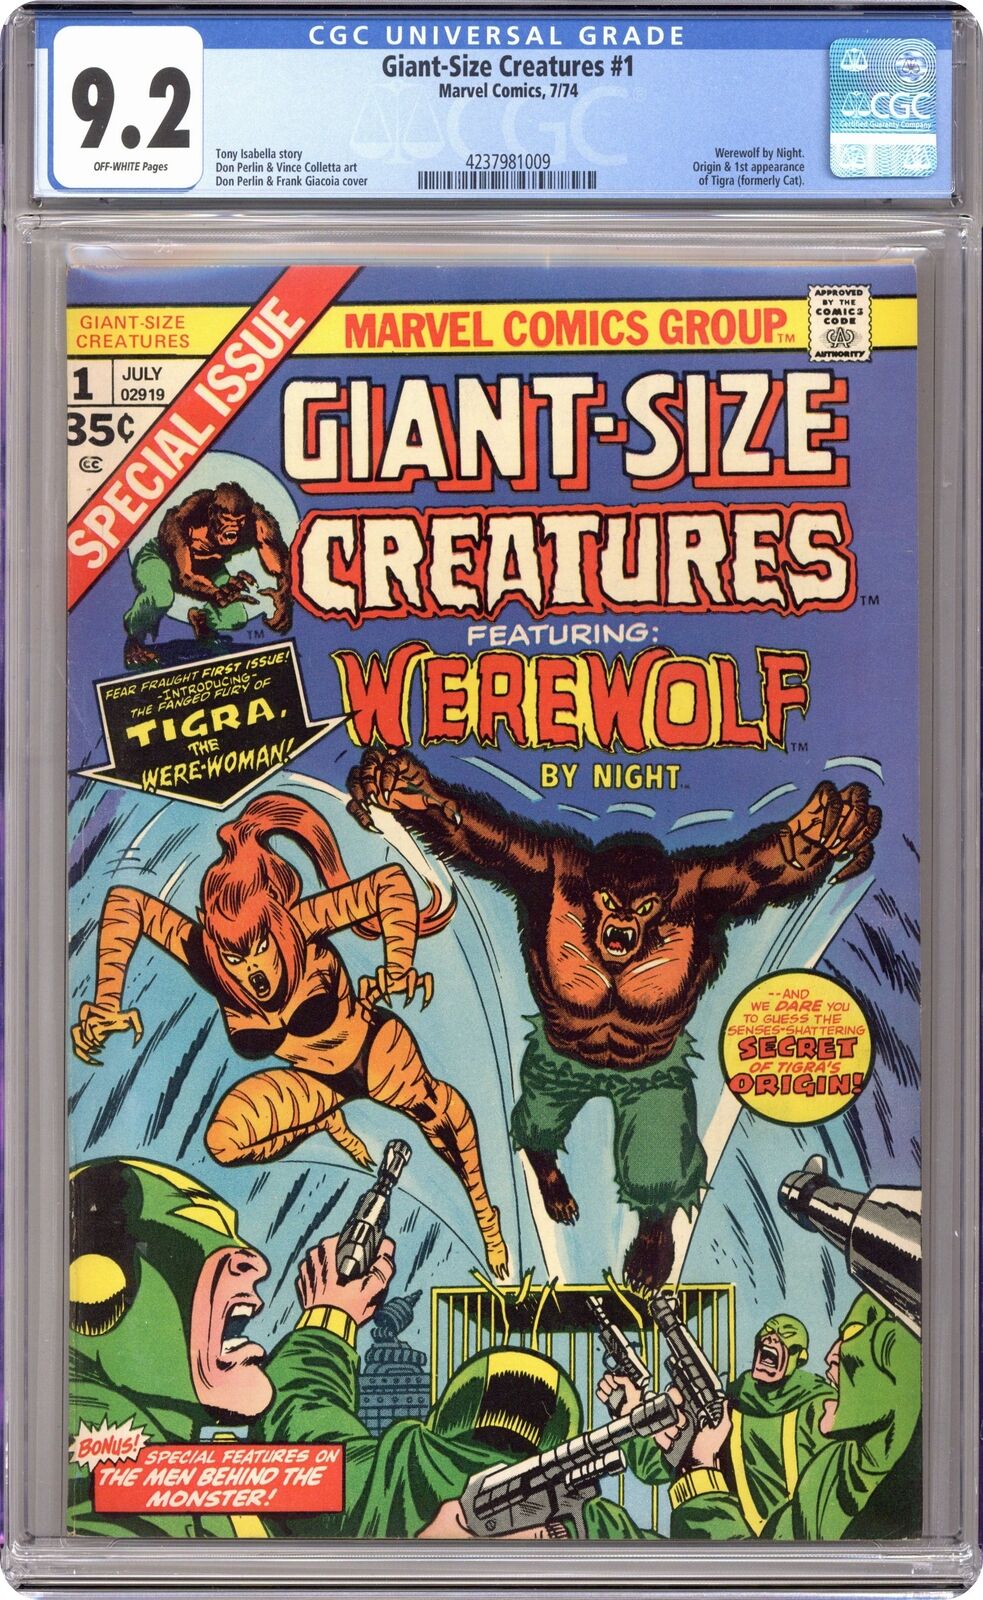 Giant Size Creatures #1 CGC 9.2 1974 4237981009